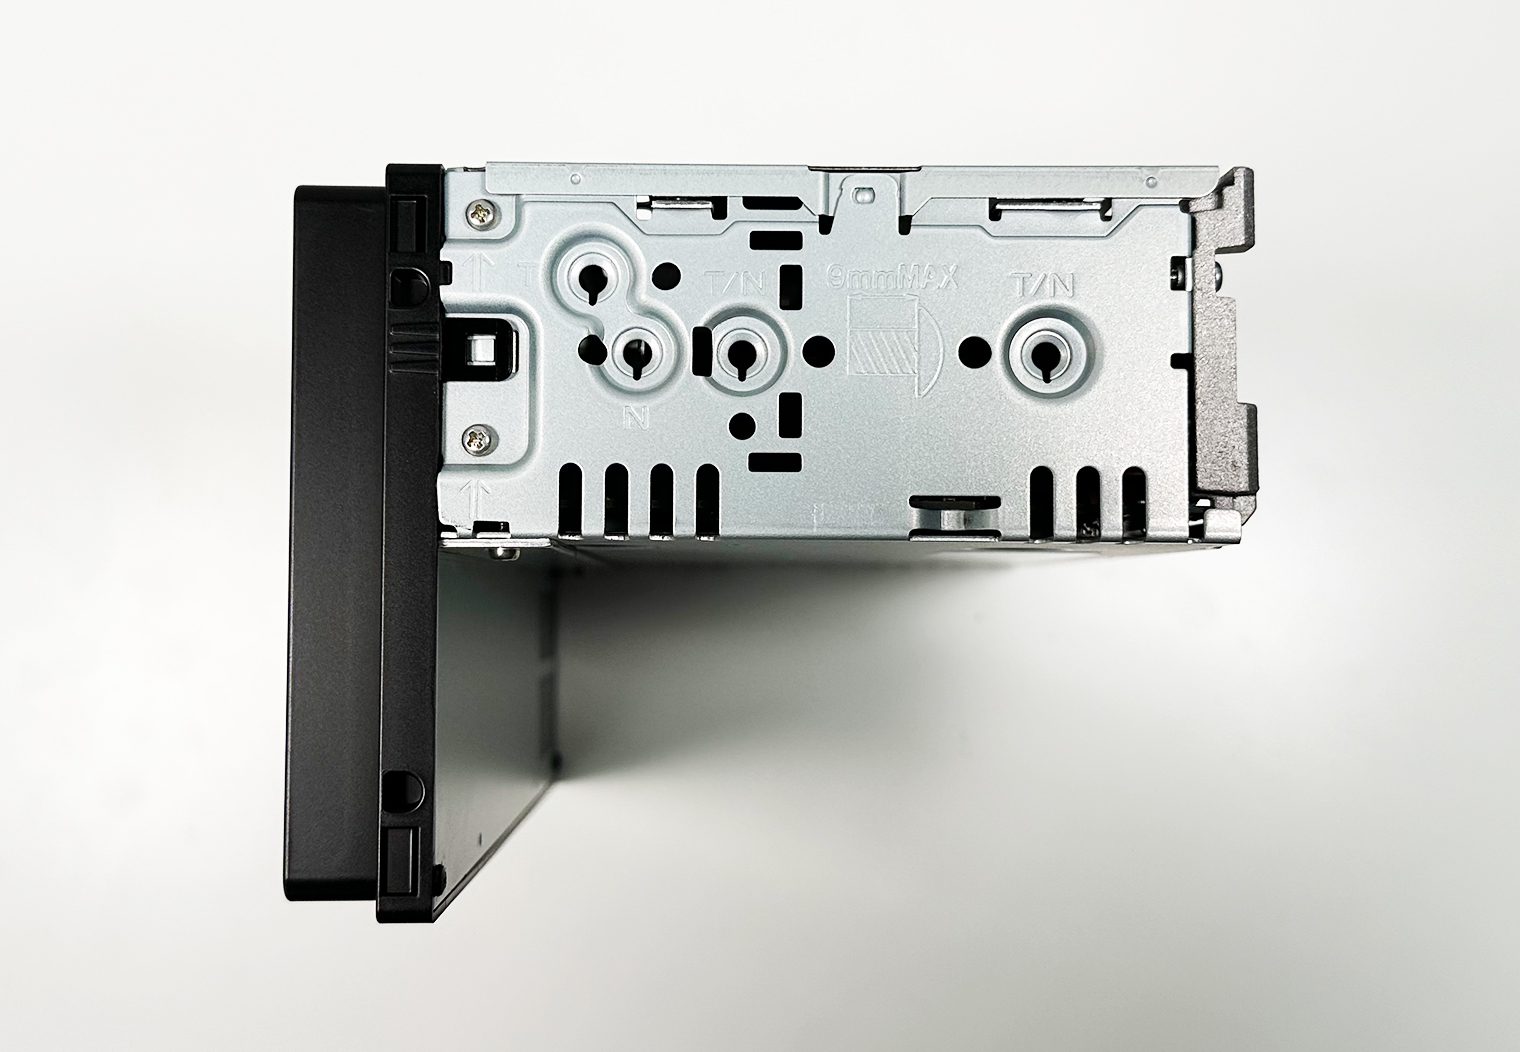 Sony XAV-AX9000 single din chassis